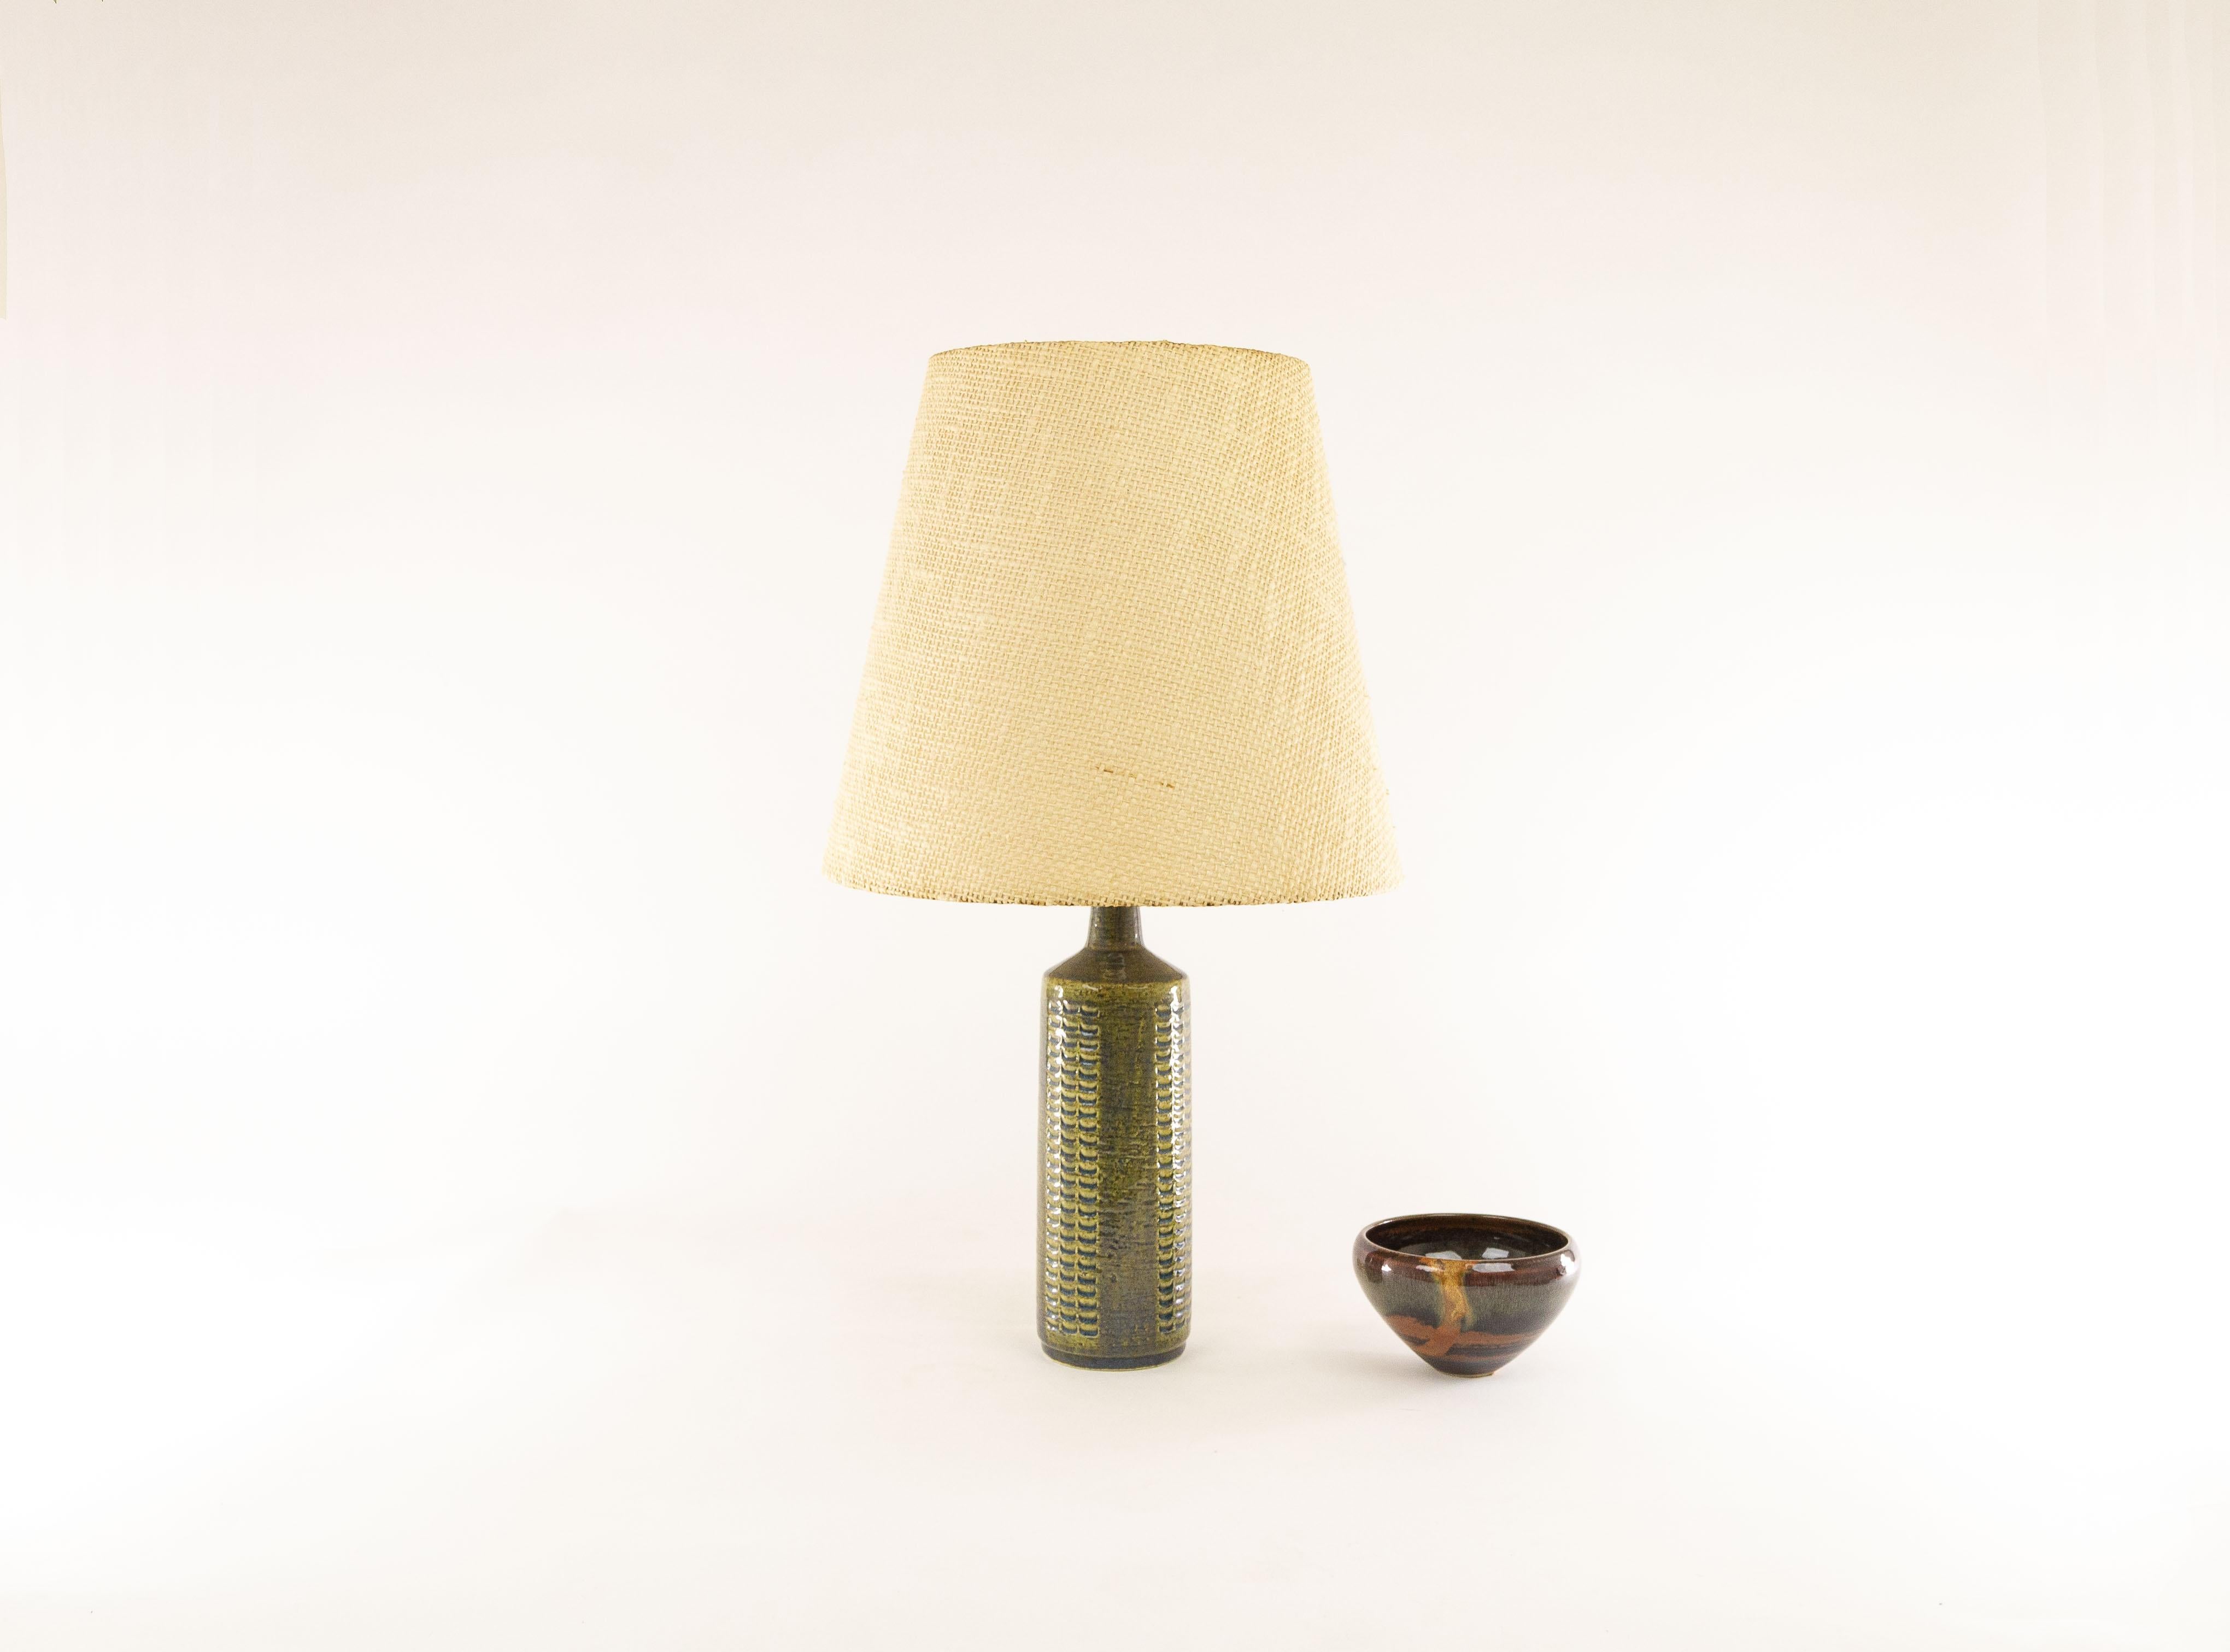 Scandinavian Modern Green & Silver Blue Table Lamp Model DL/27 by Per Linnemann-Schmidt for Palshus